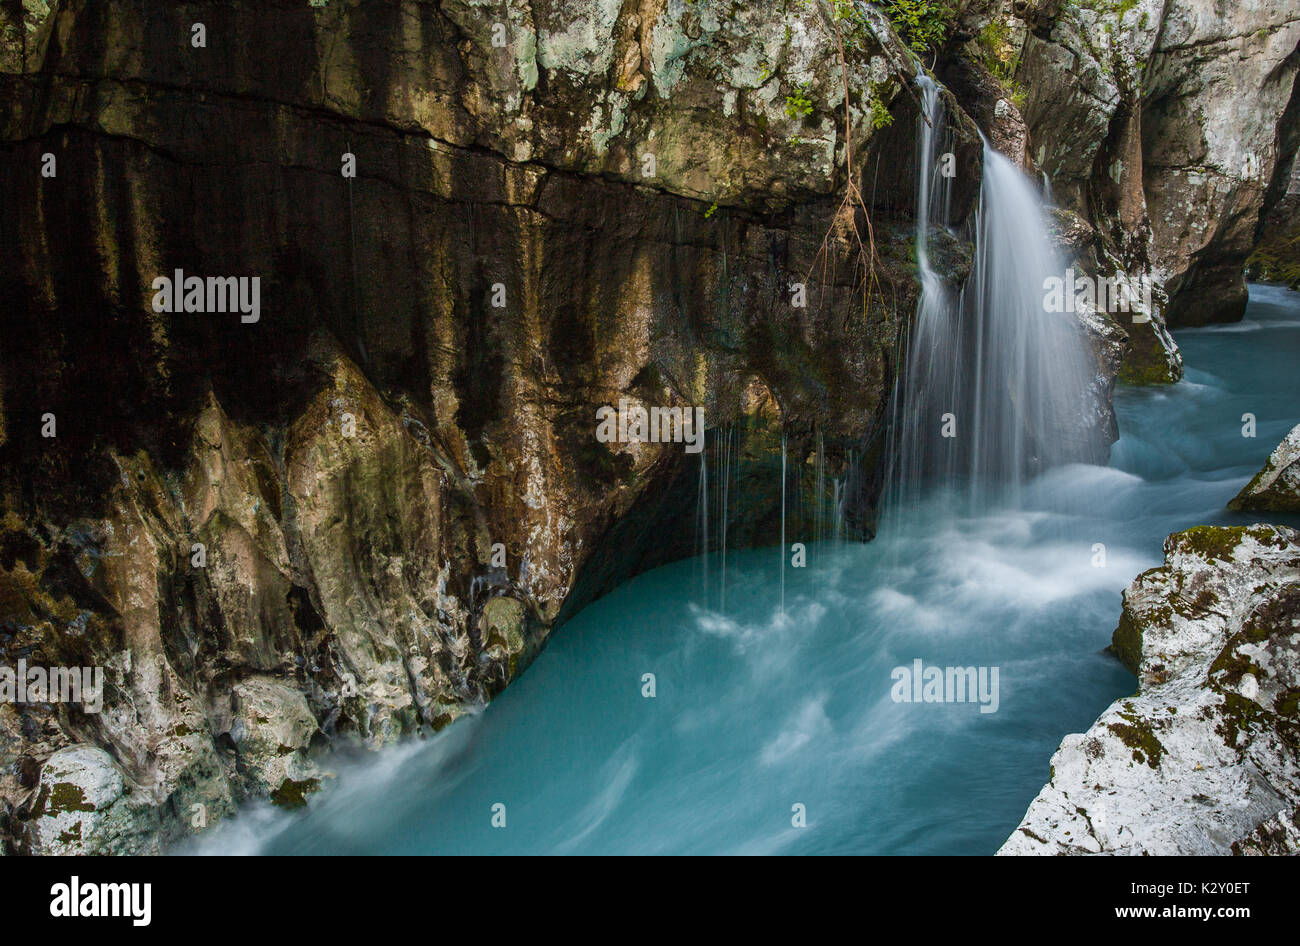 Isonzo è uno dei più bei fiumi del mondo. Colore smeraldo dal calcare e minerali è unica tra i fiumi alpini Foto Stock